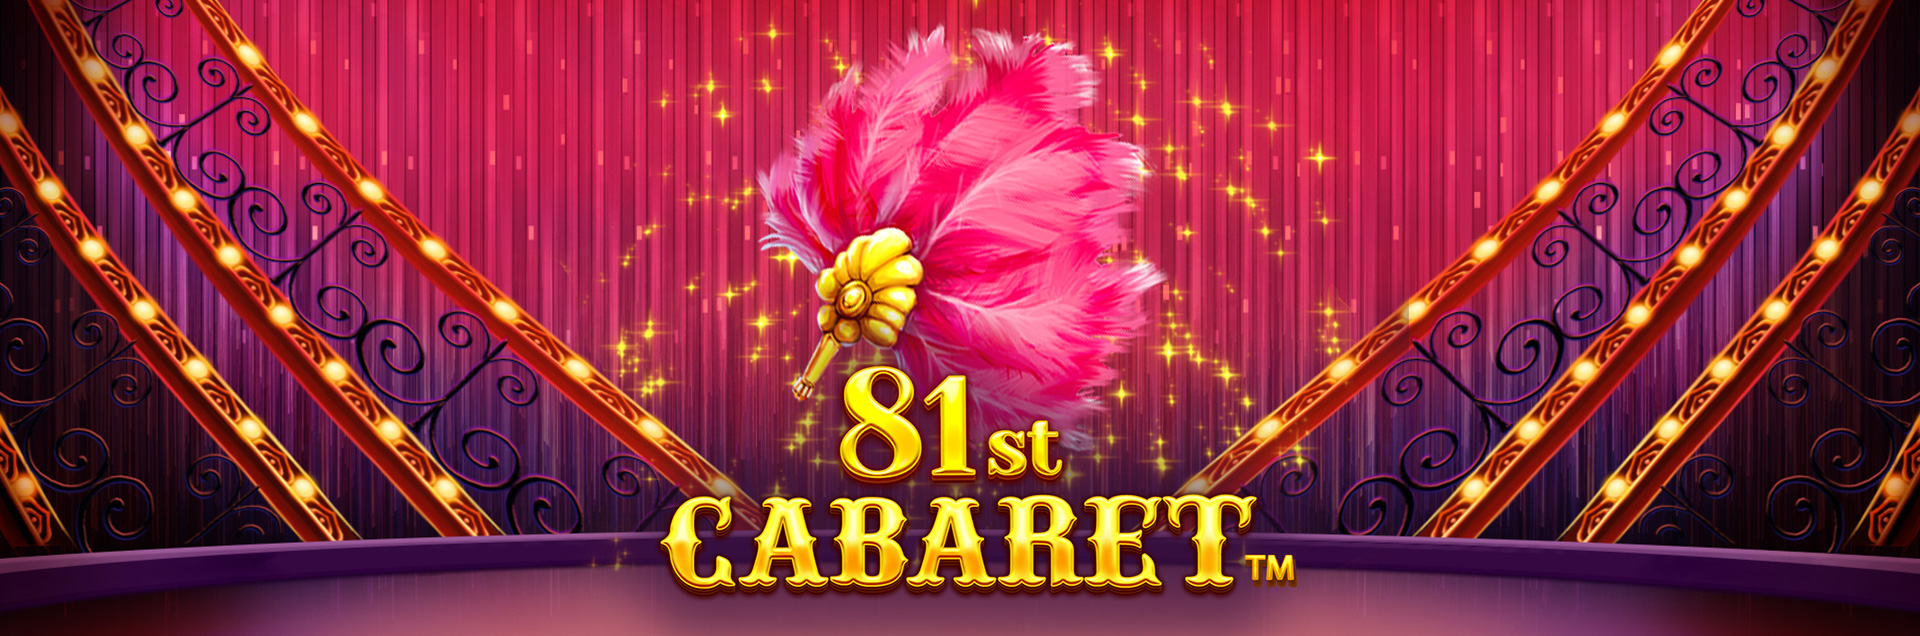 81st Cabaret header games final